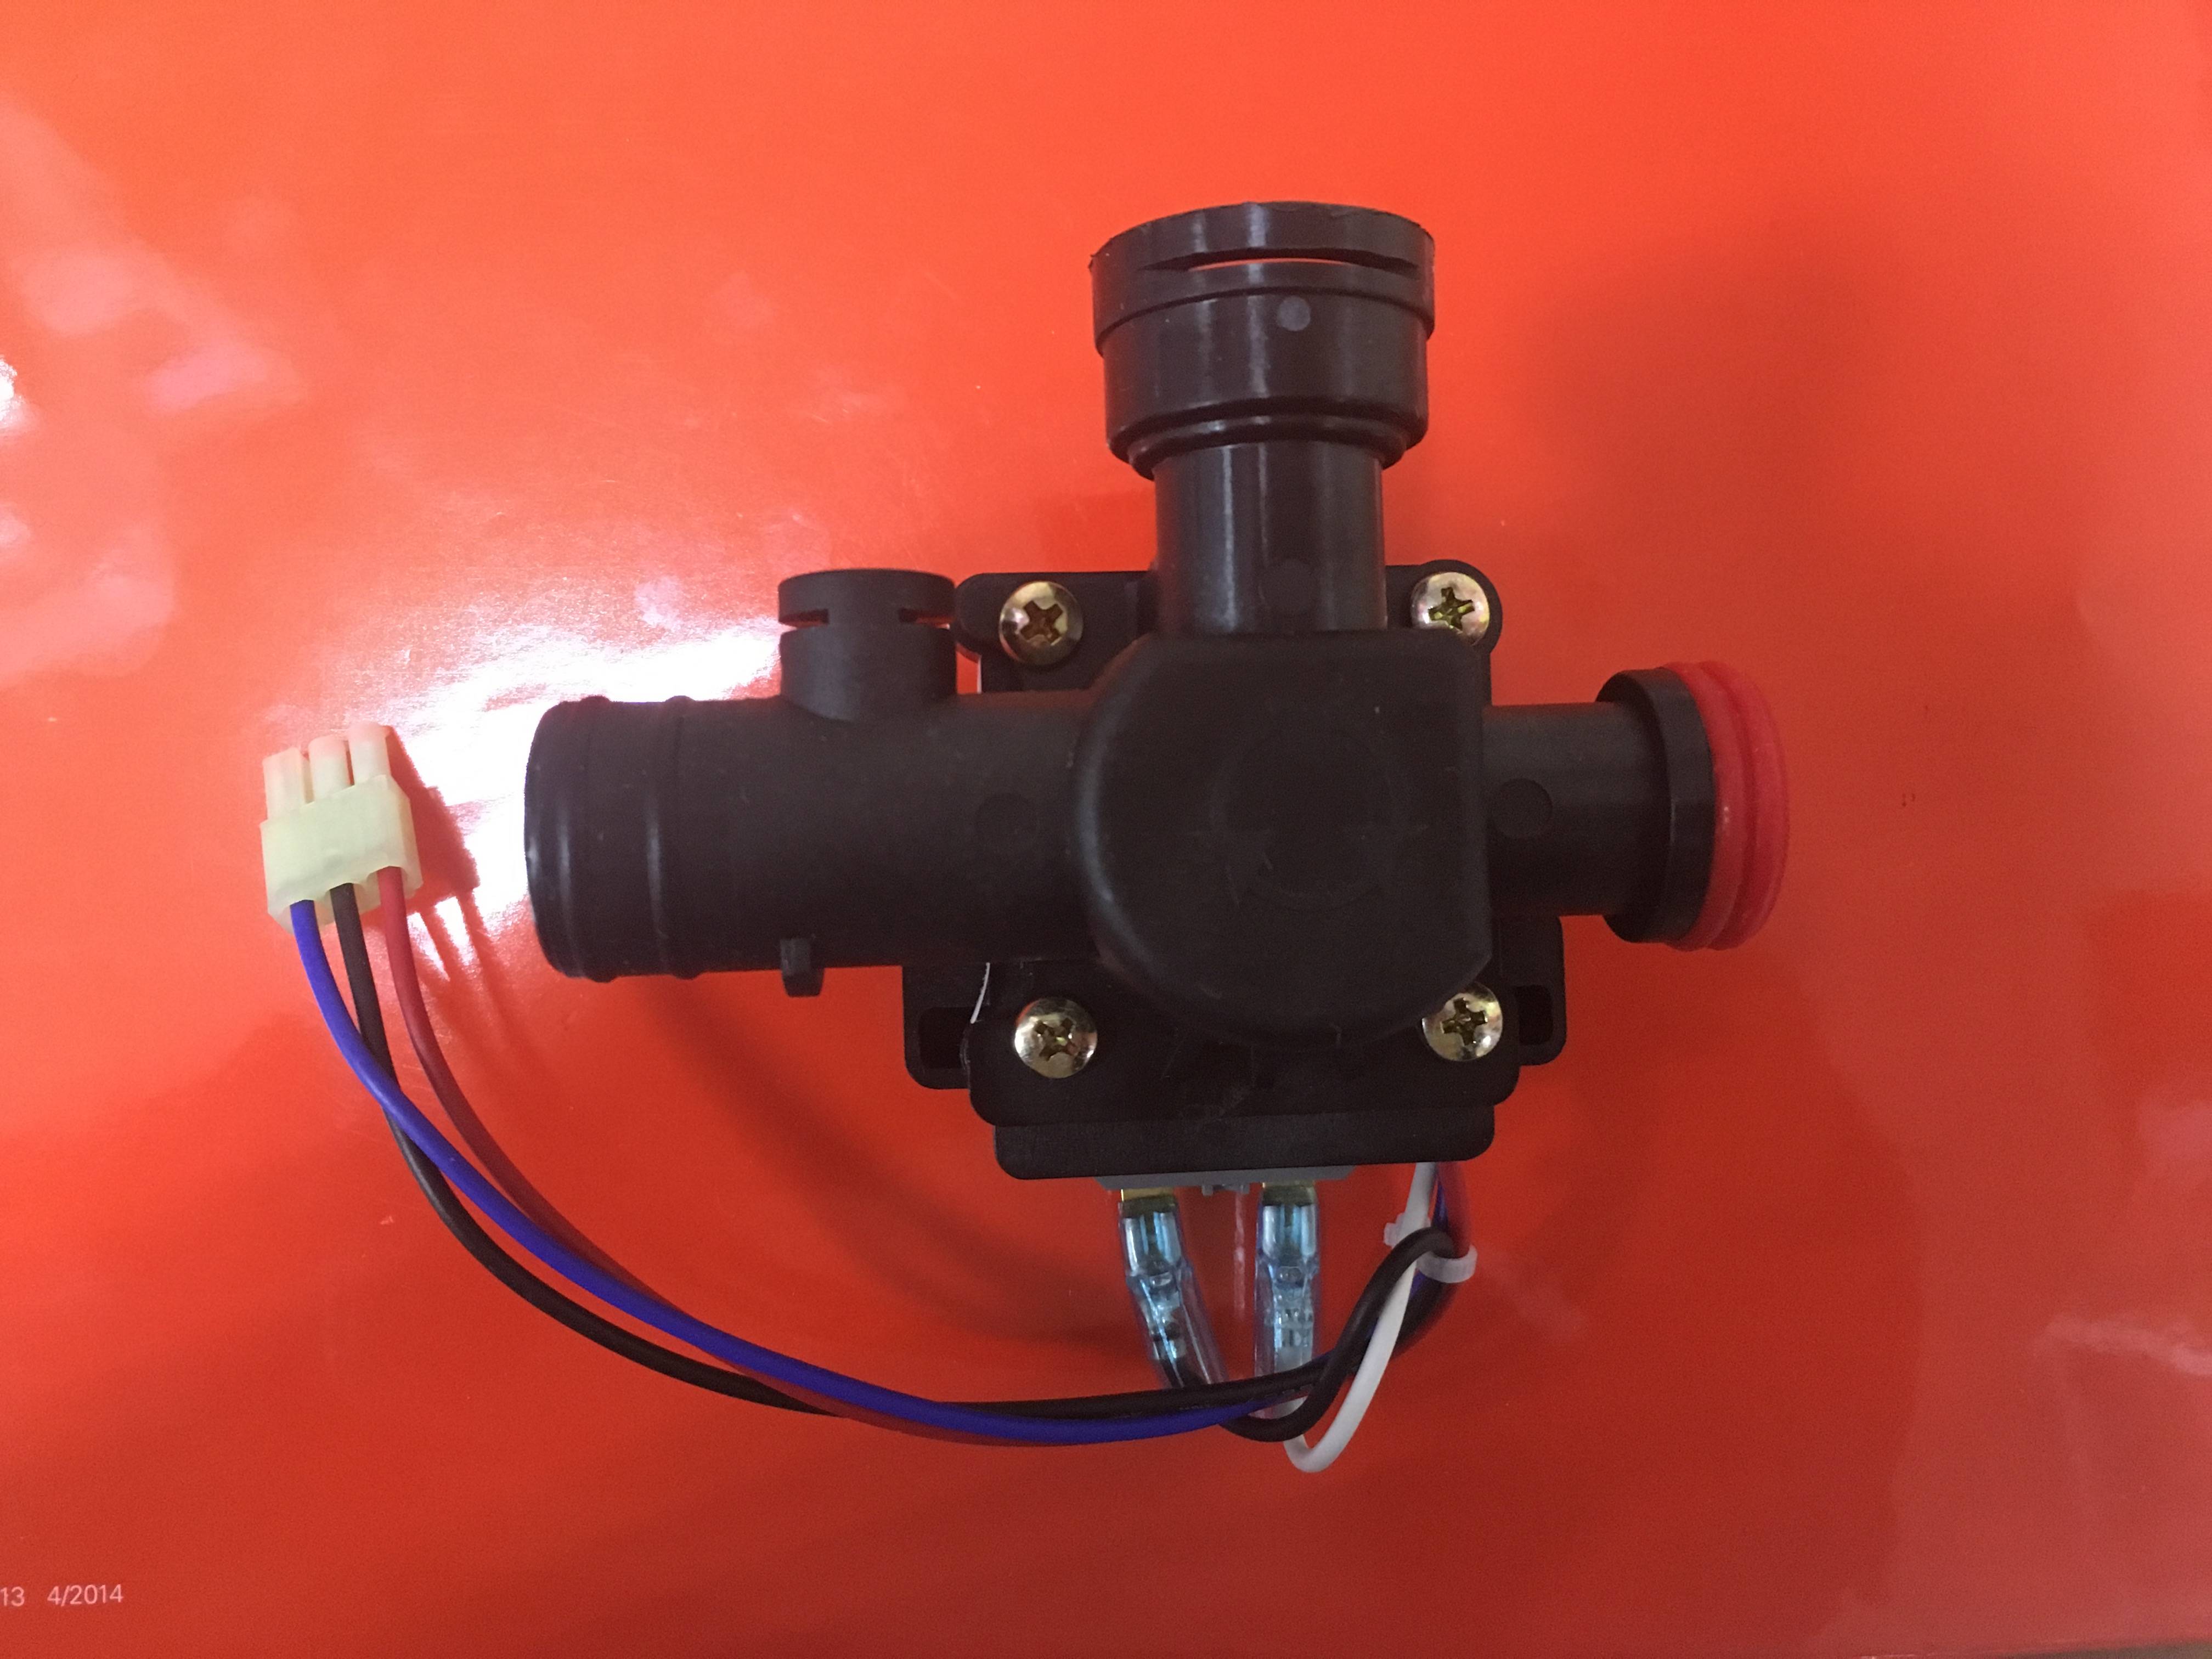 Трехходовой клапан для отопления с терморегулятором